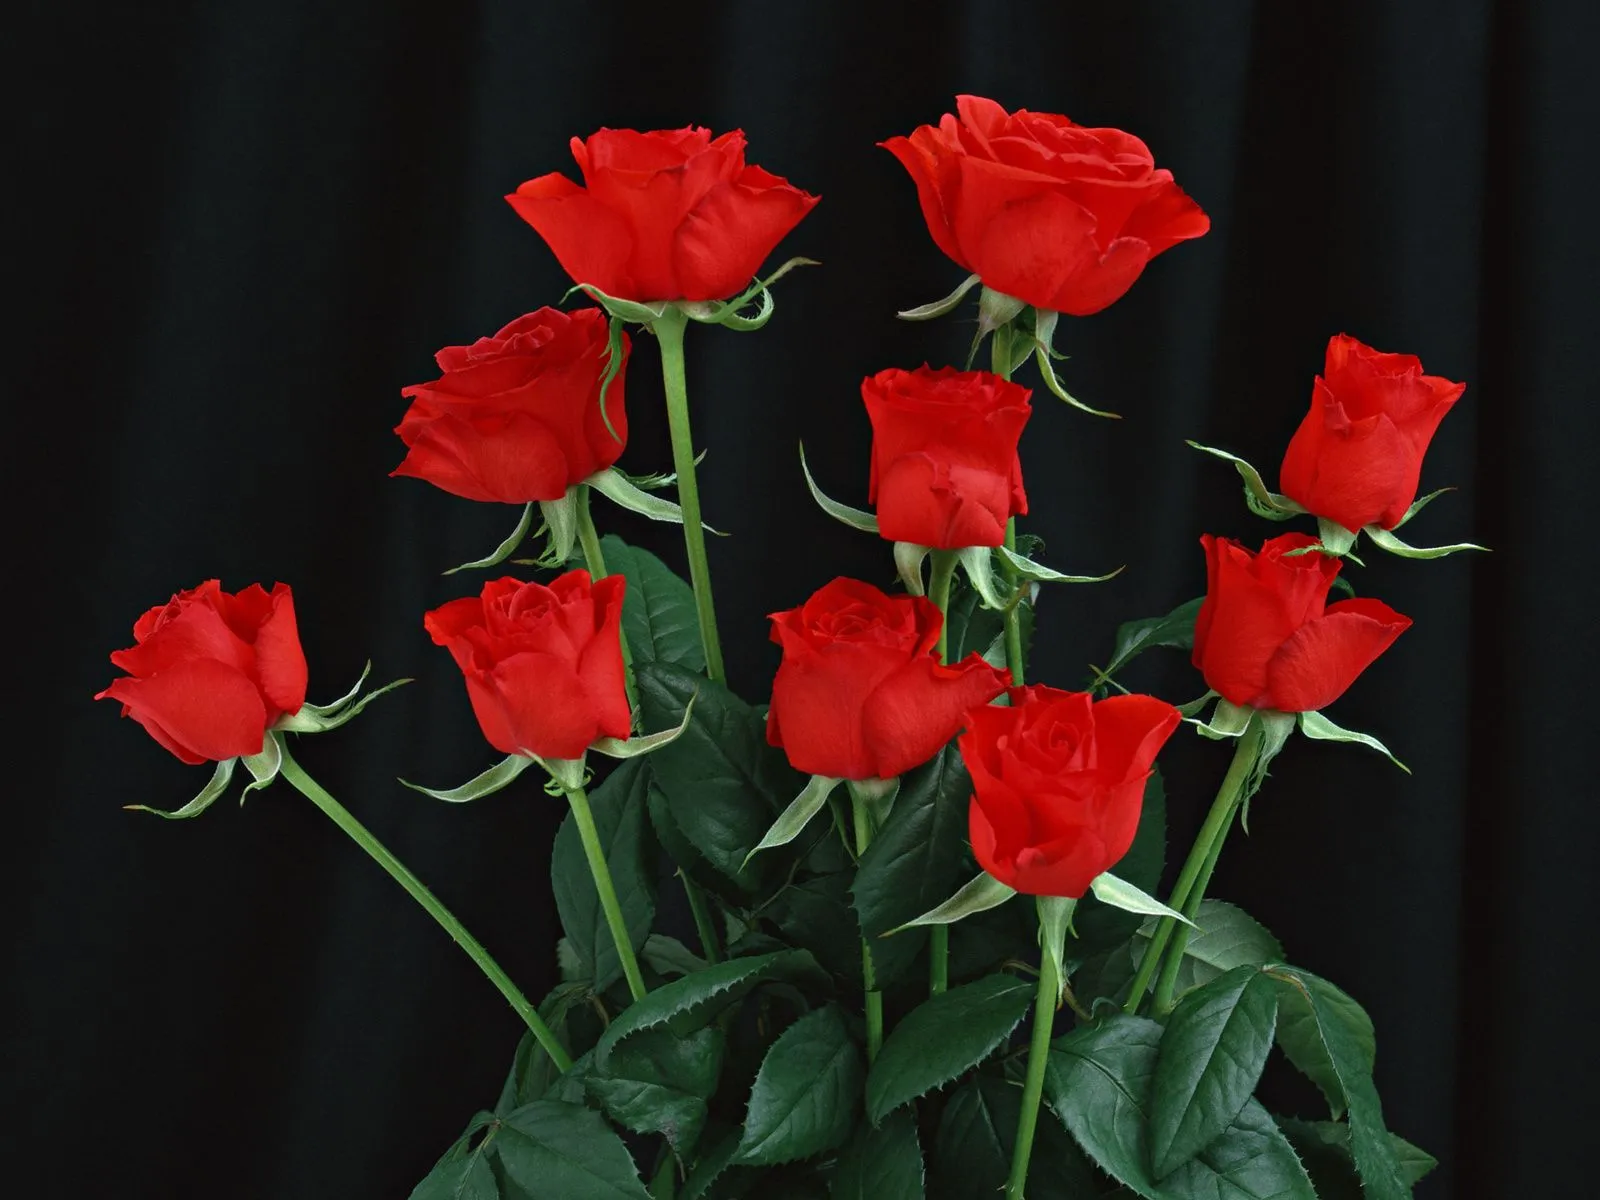 Fotos de hermosas rosas rojas Mejores fotos del mundo para facebook